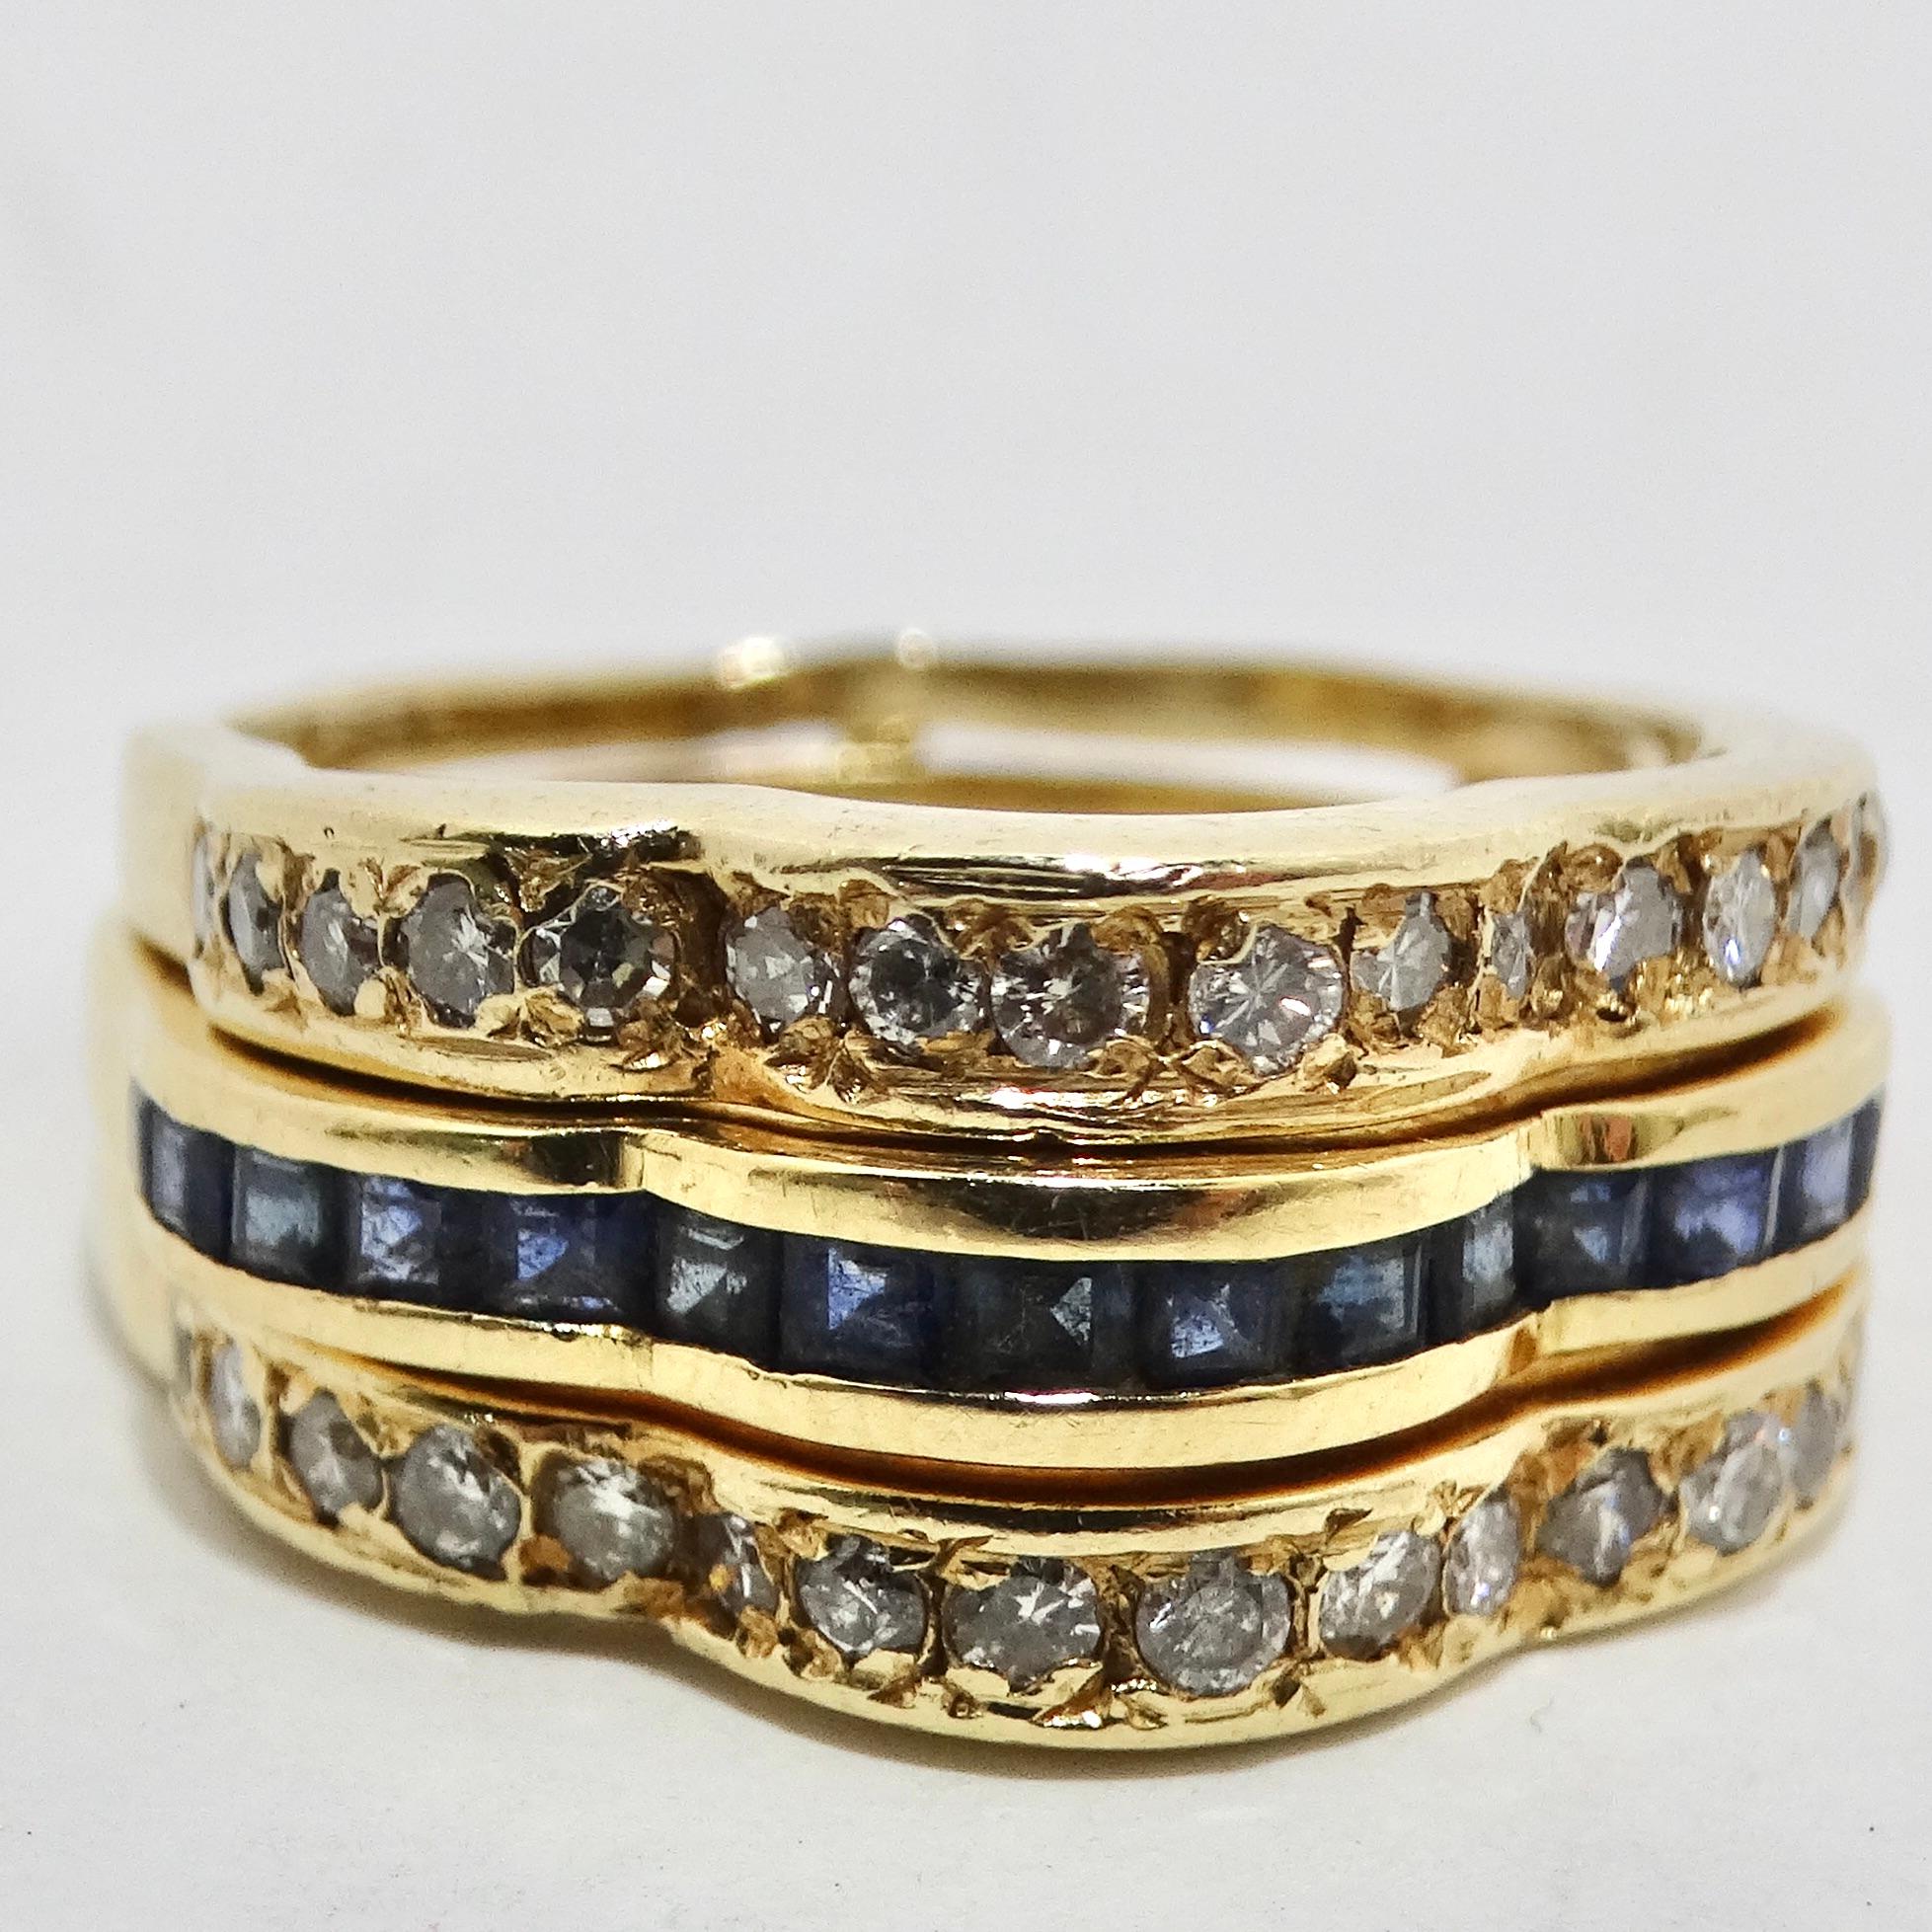 Erhöhen Sie Ihr Schmuckspiel mit unserem exquisiten Set aus vier von Van Cleef inspirierten Ringen mit Diamanten, Rubinen, Smaragden und Saphiren aus 18-karätigem Gold. Dieses maßgeschneiderte Ringset ist ein Meisterwerk an Vielseitigkeit und